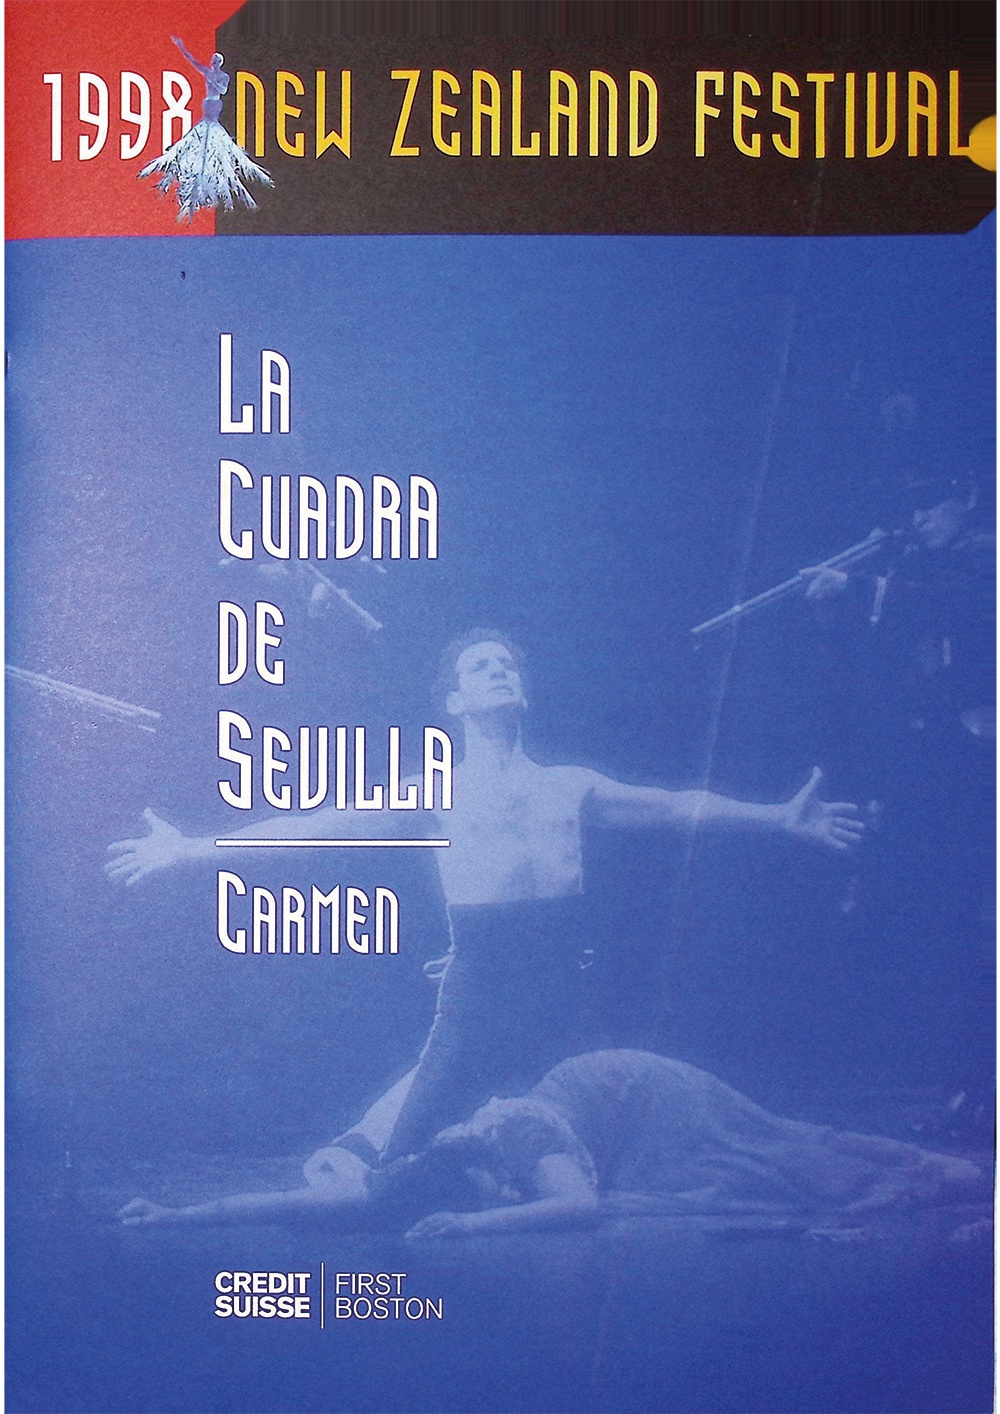 La Cuadra de Sevilla. Carmen. New Zealand Festival